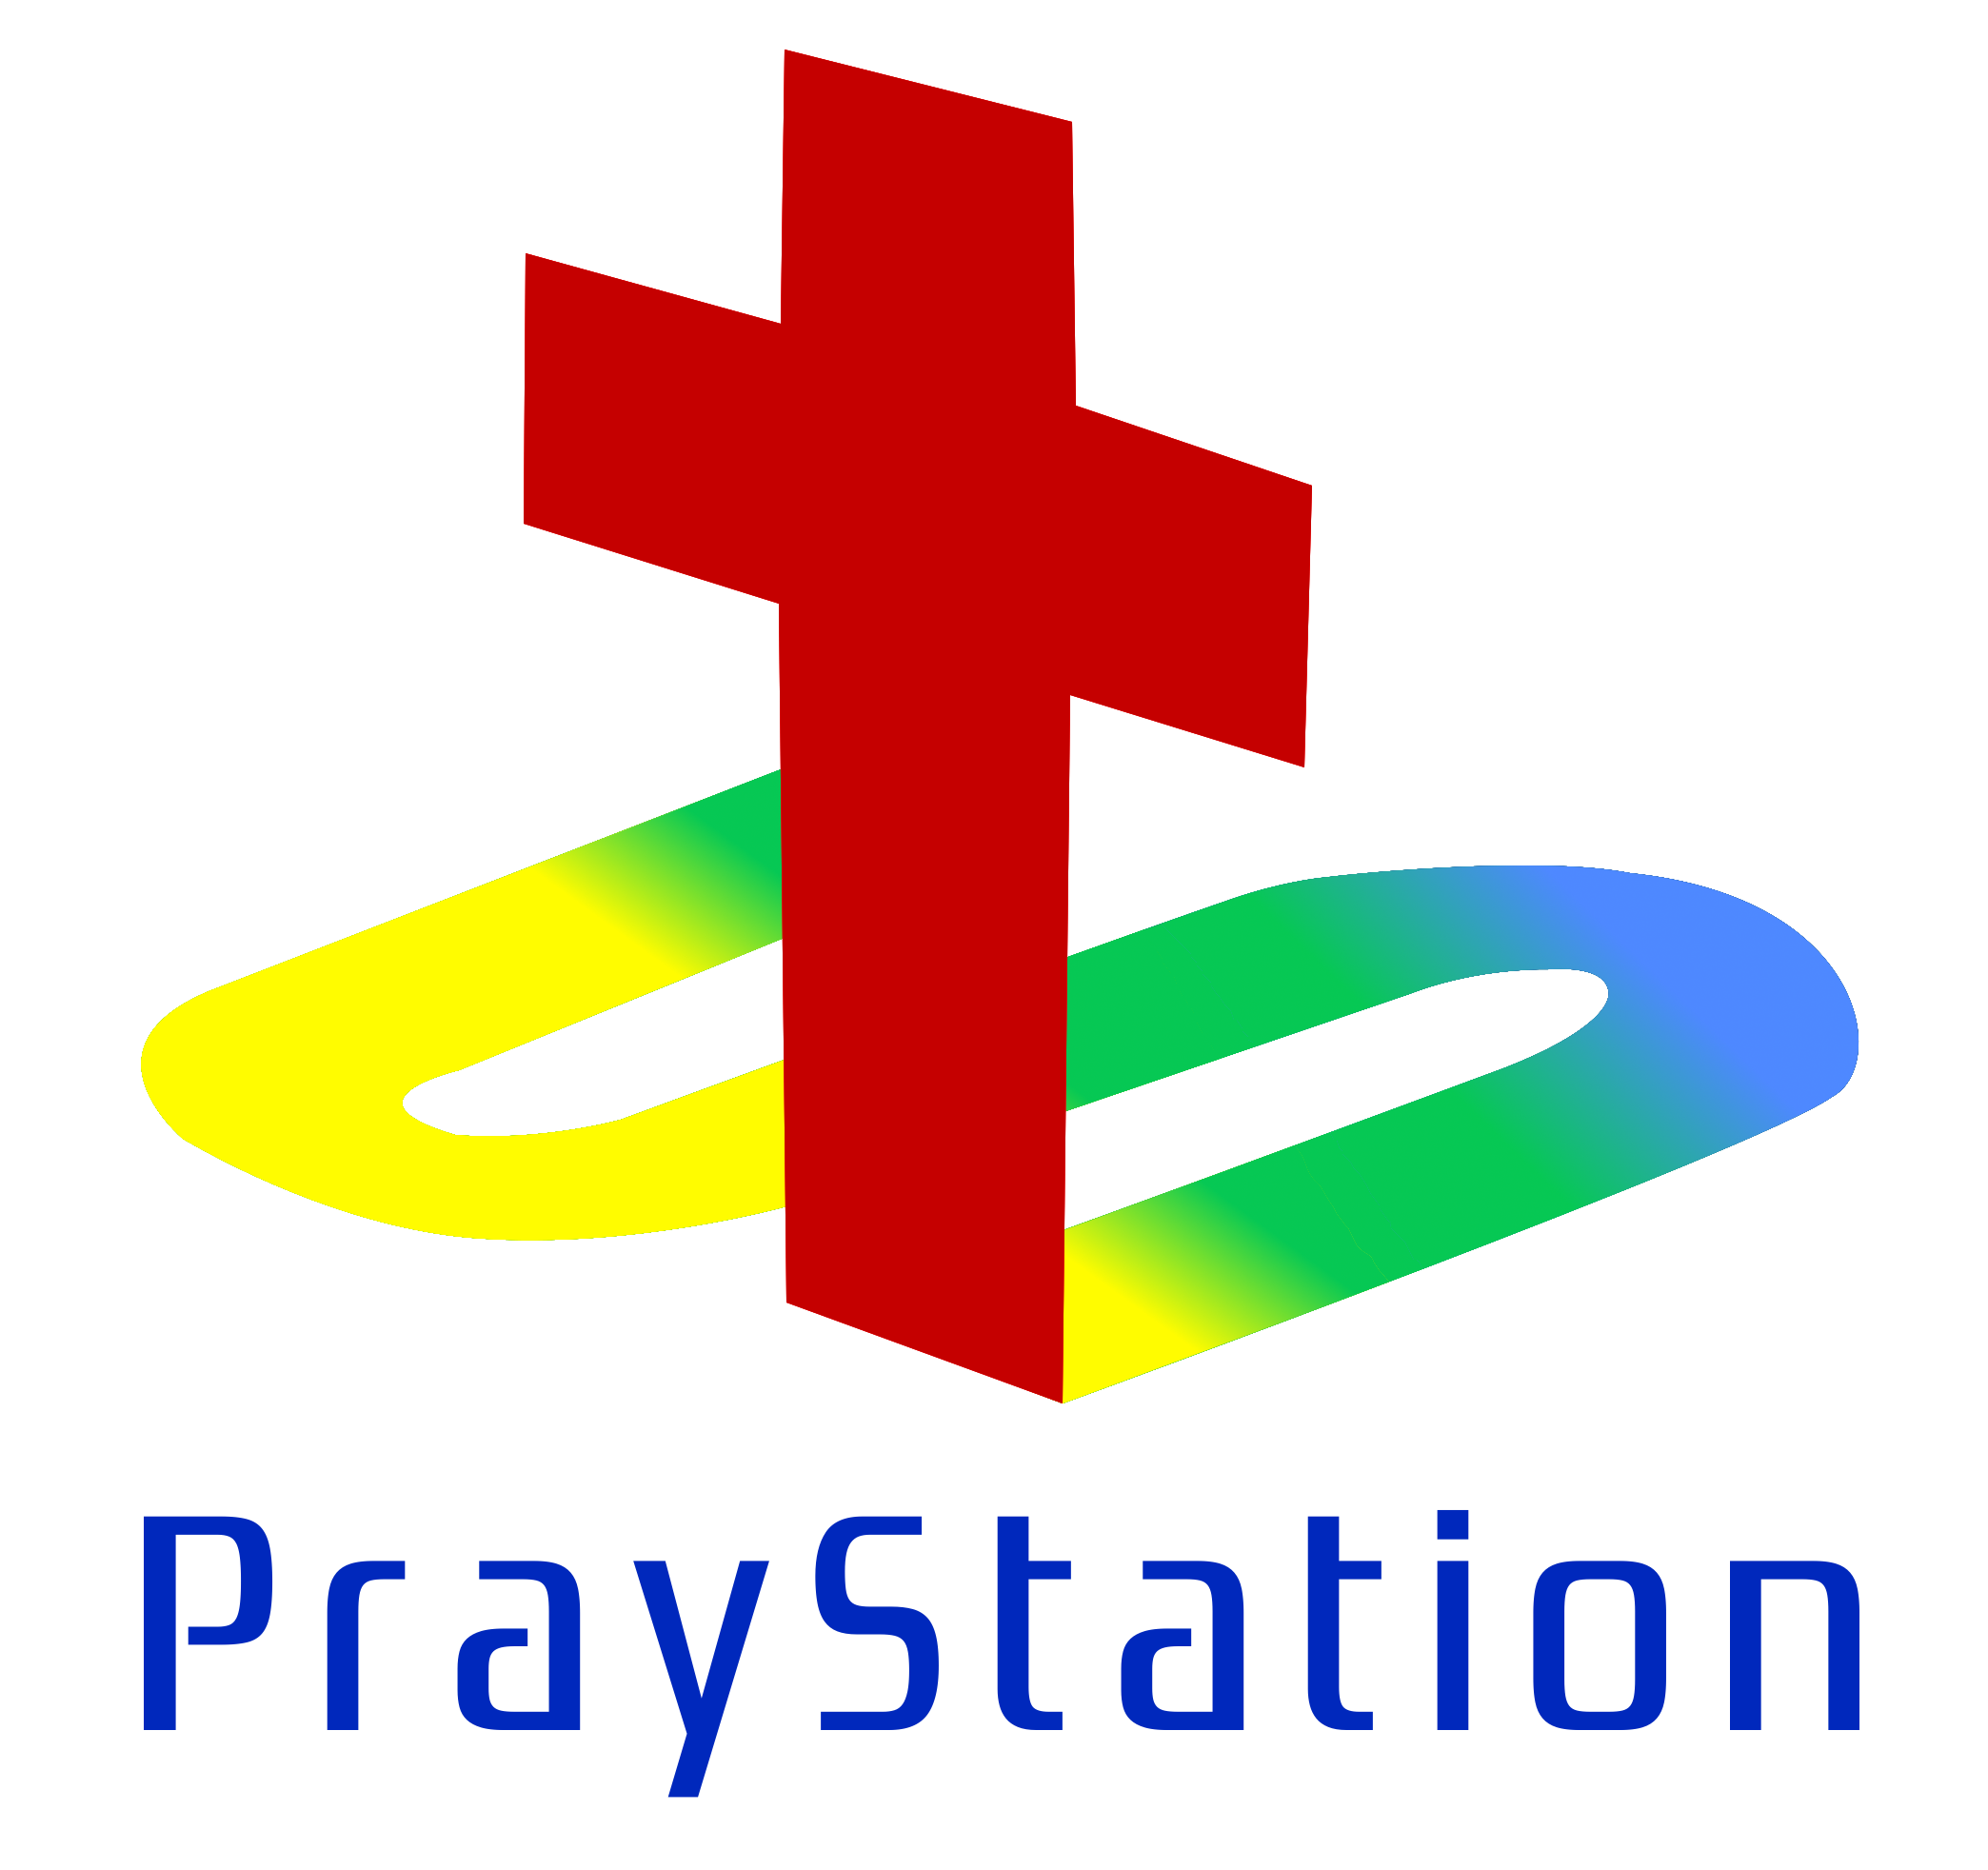 PrayStation